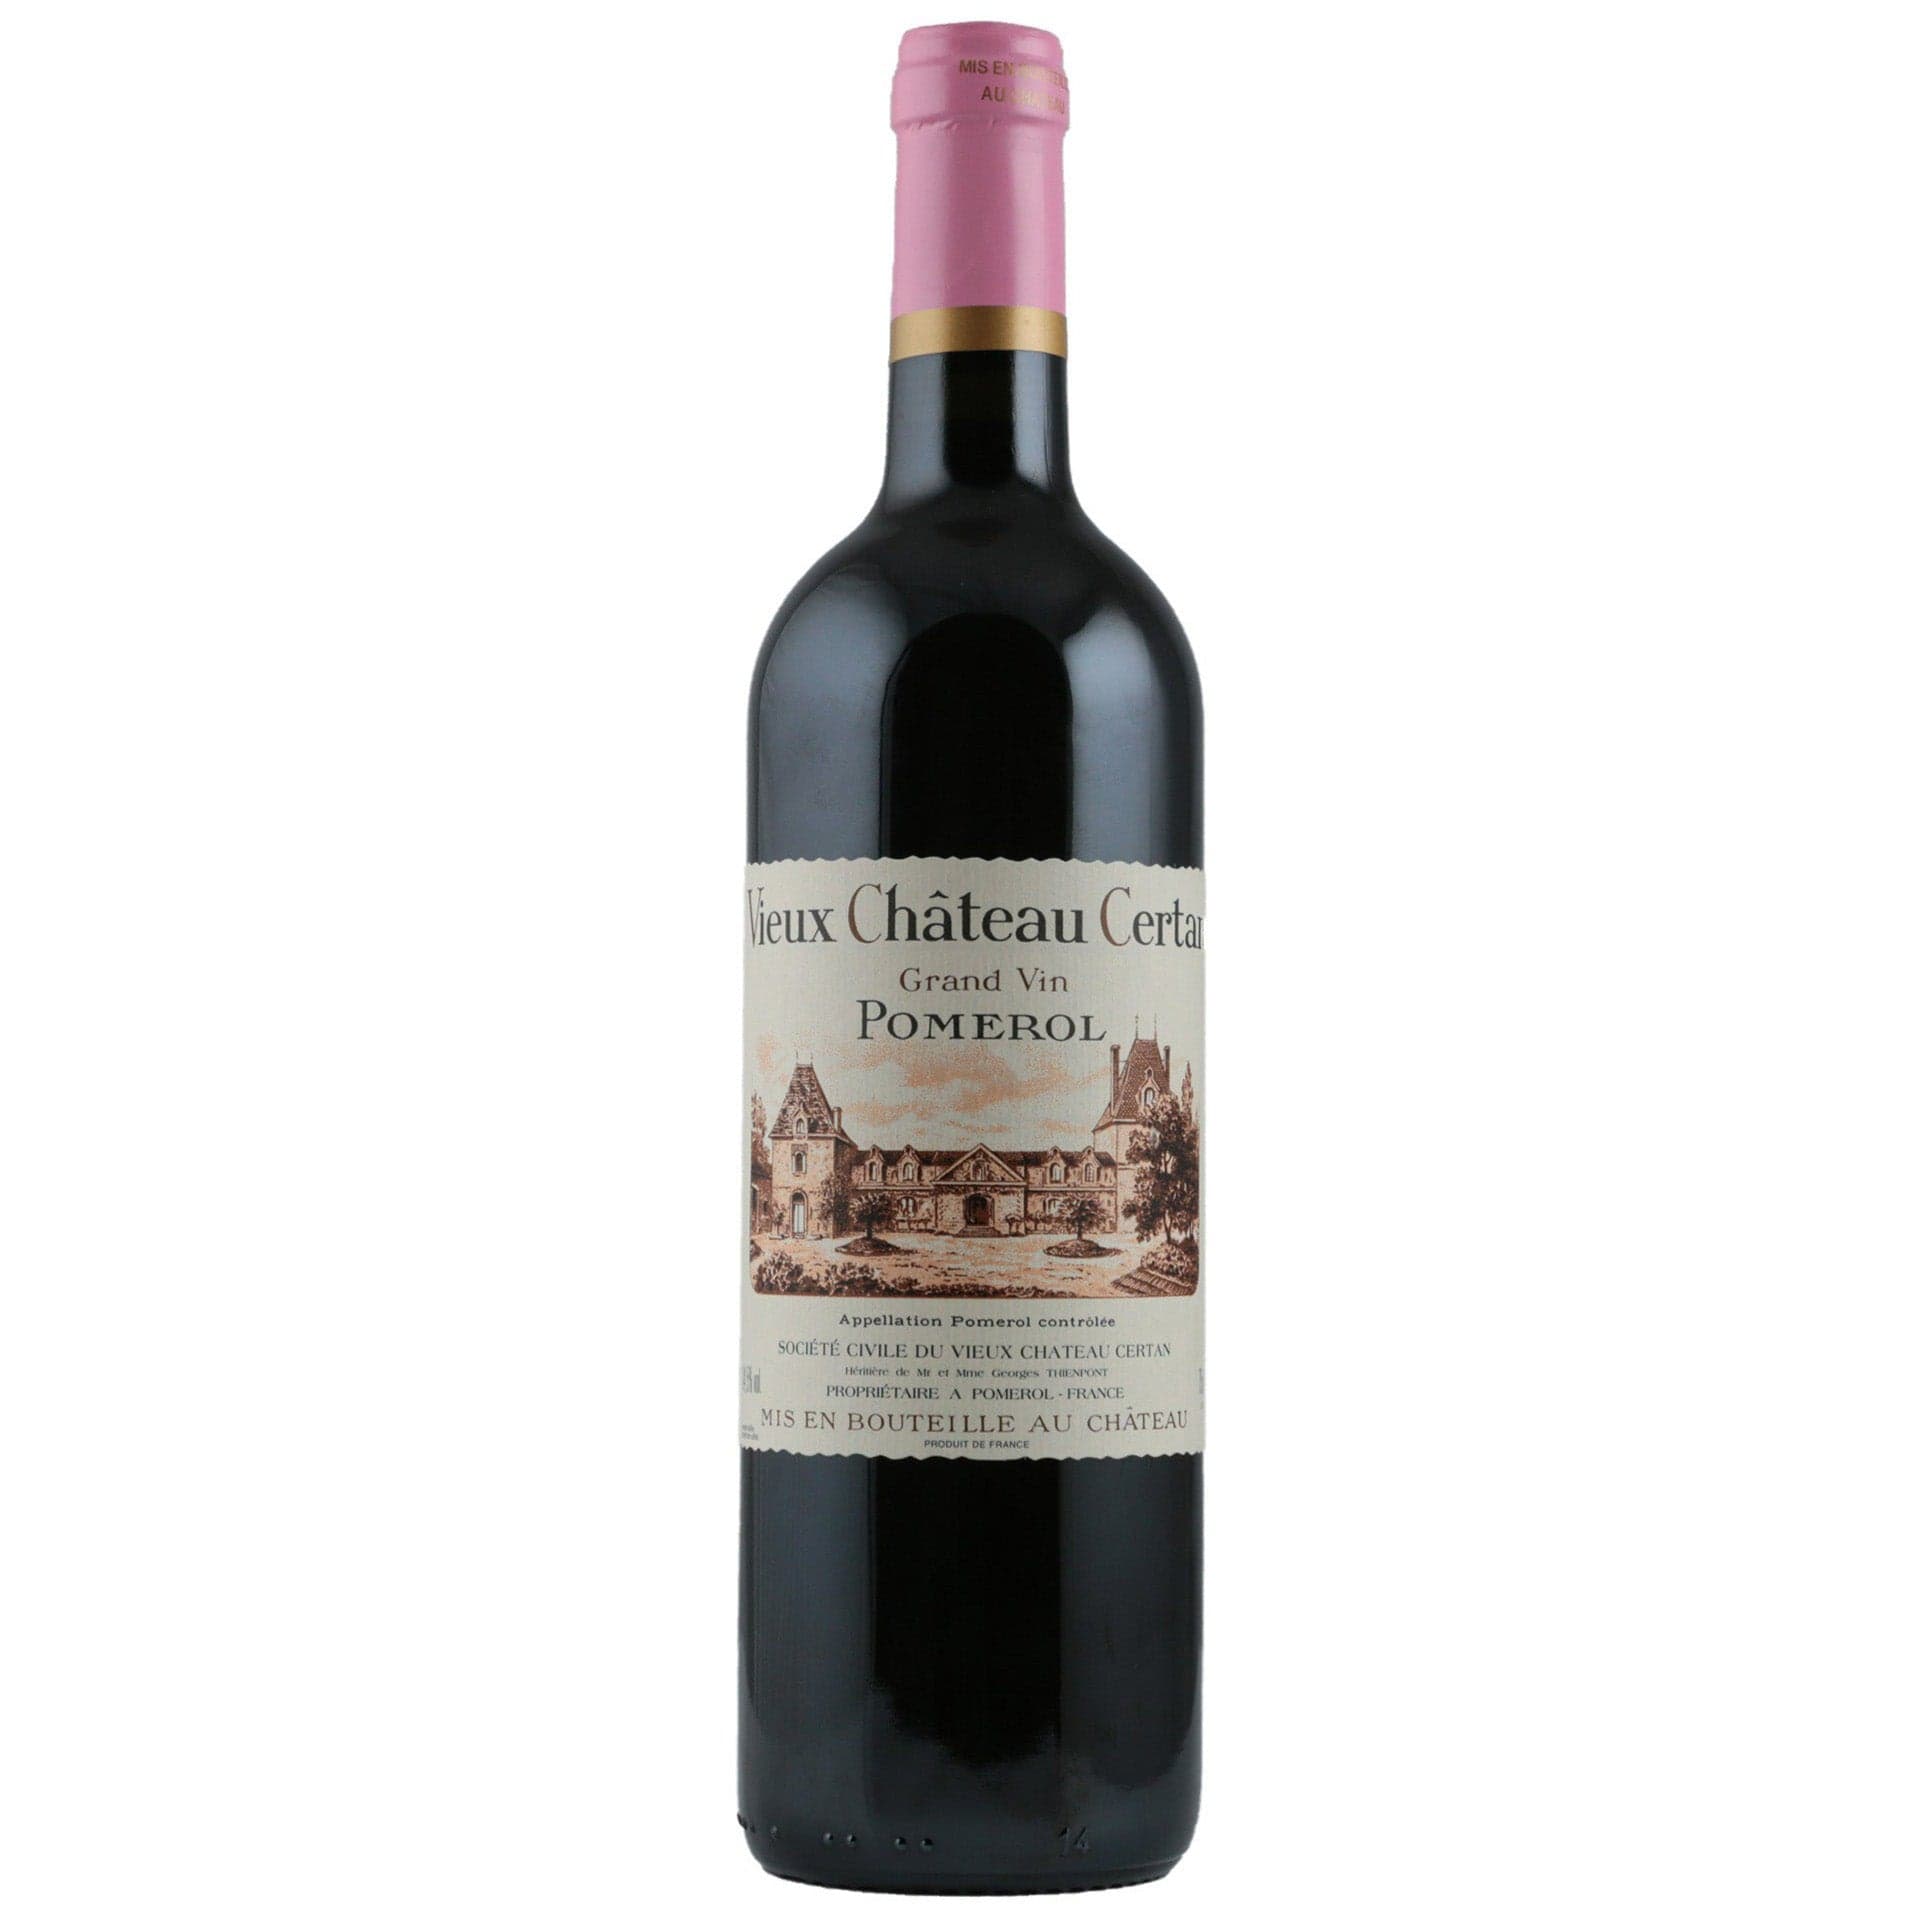 Single bottle of Red wine Vieux Château Certan, Vieux Château Certan, Pomerol, 2005 80% Merlot & 20% Cabernet Franc